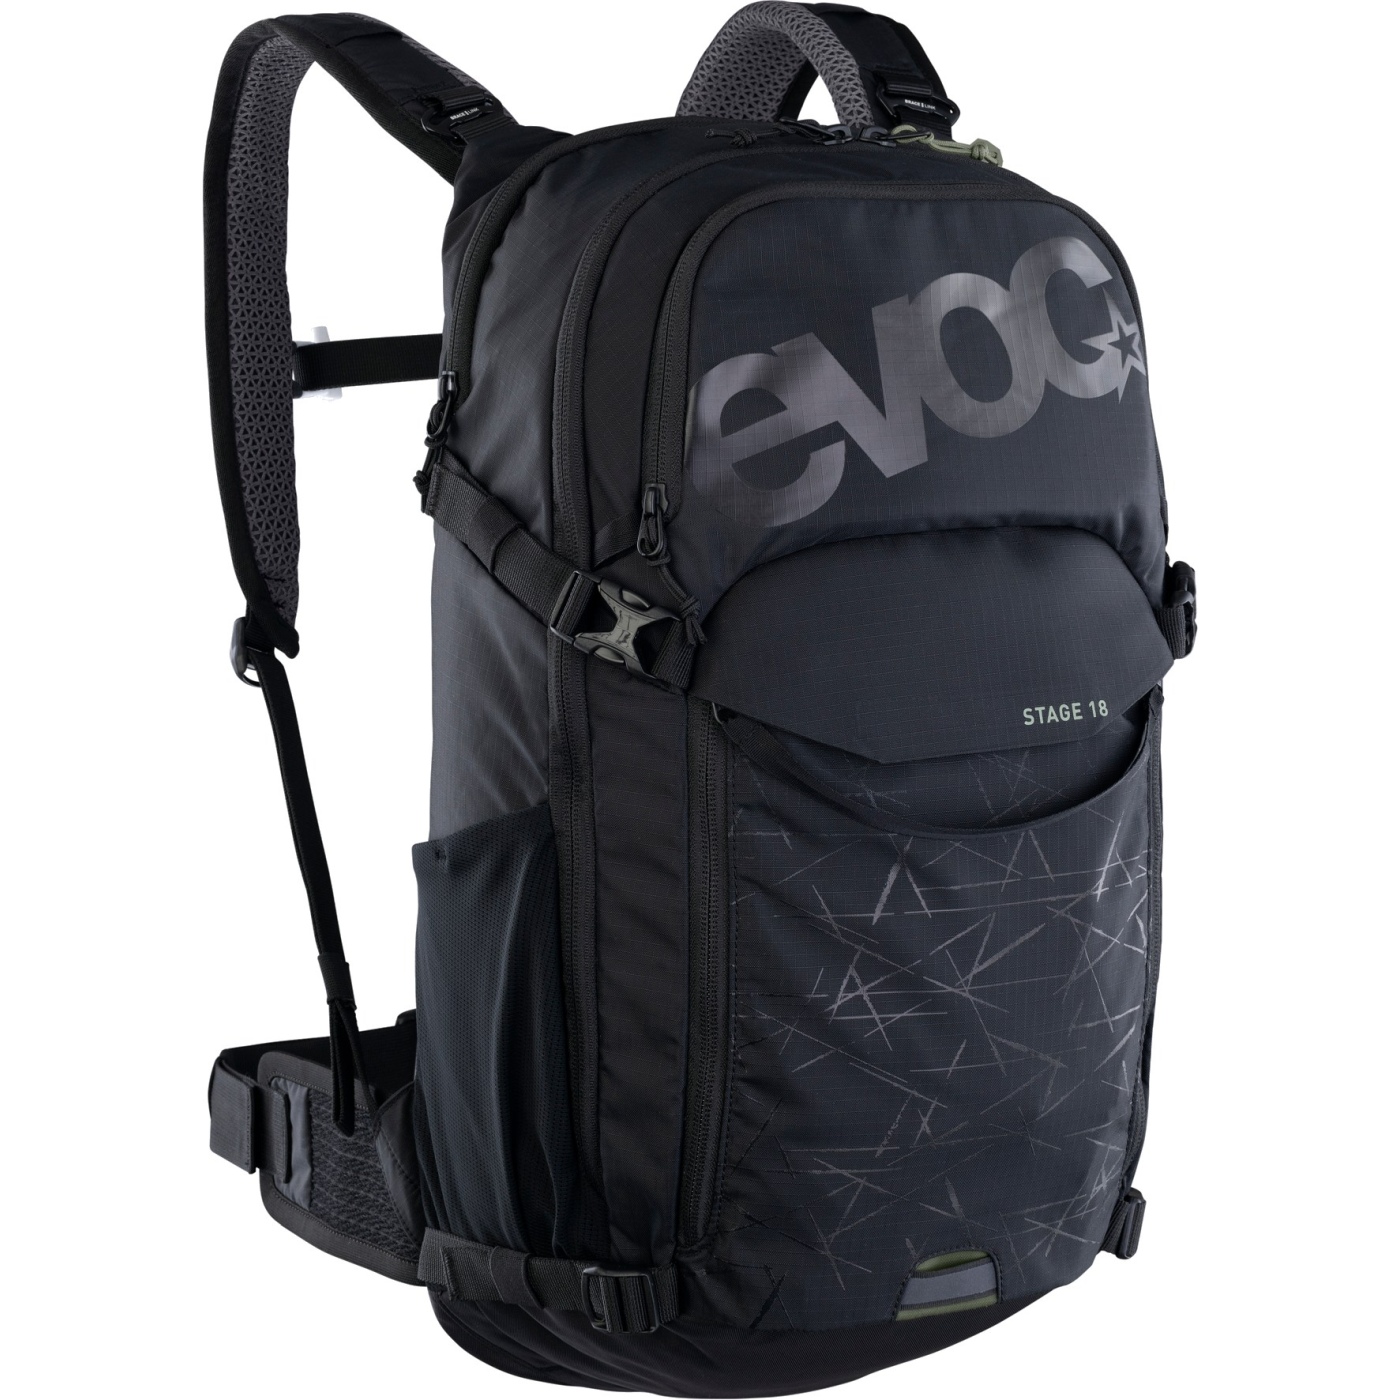 Image of EVOC Stage Backpack - 18 L - Black